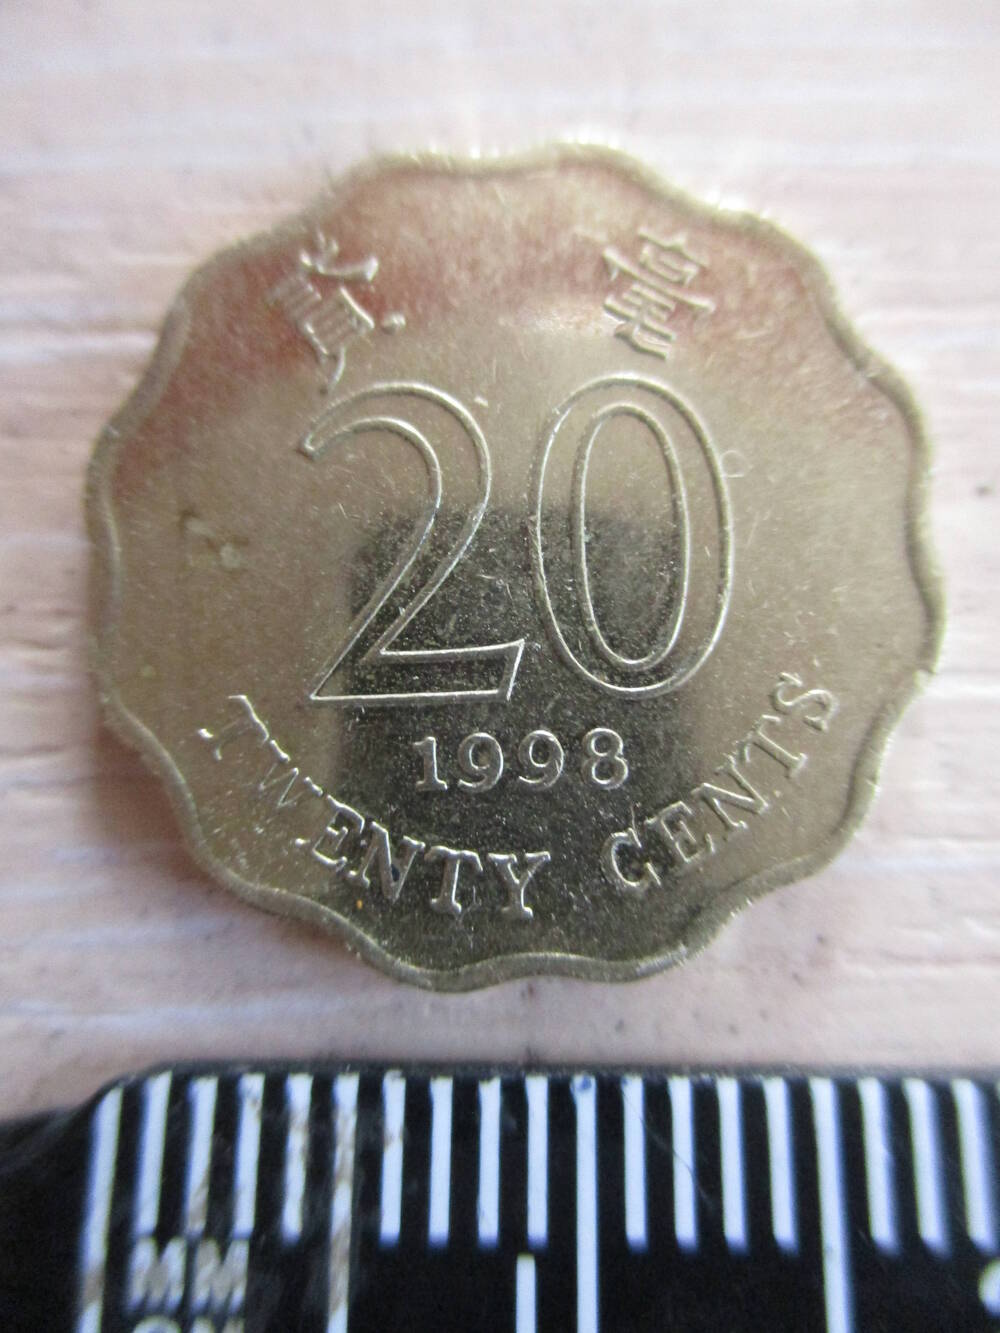 Монета Гонконга достоинством 20 центов 1998 года.